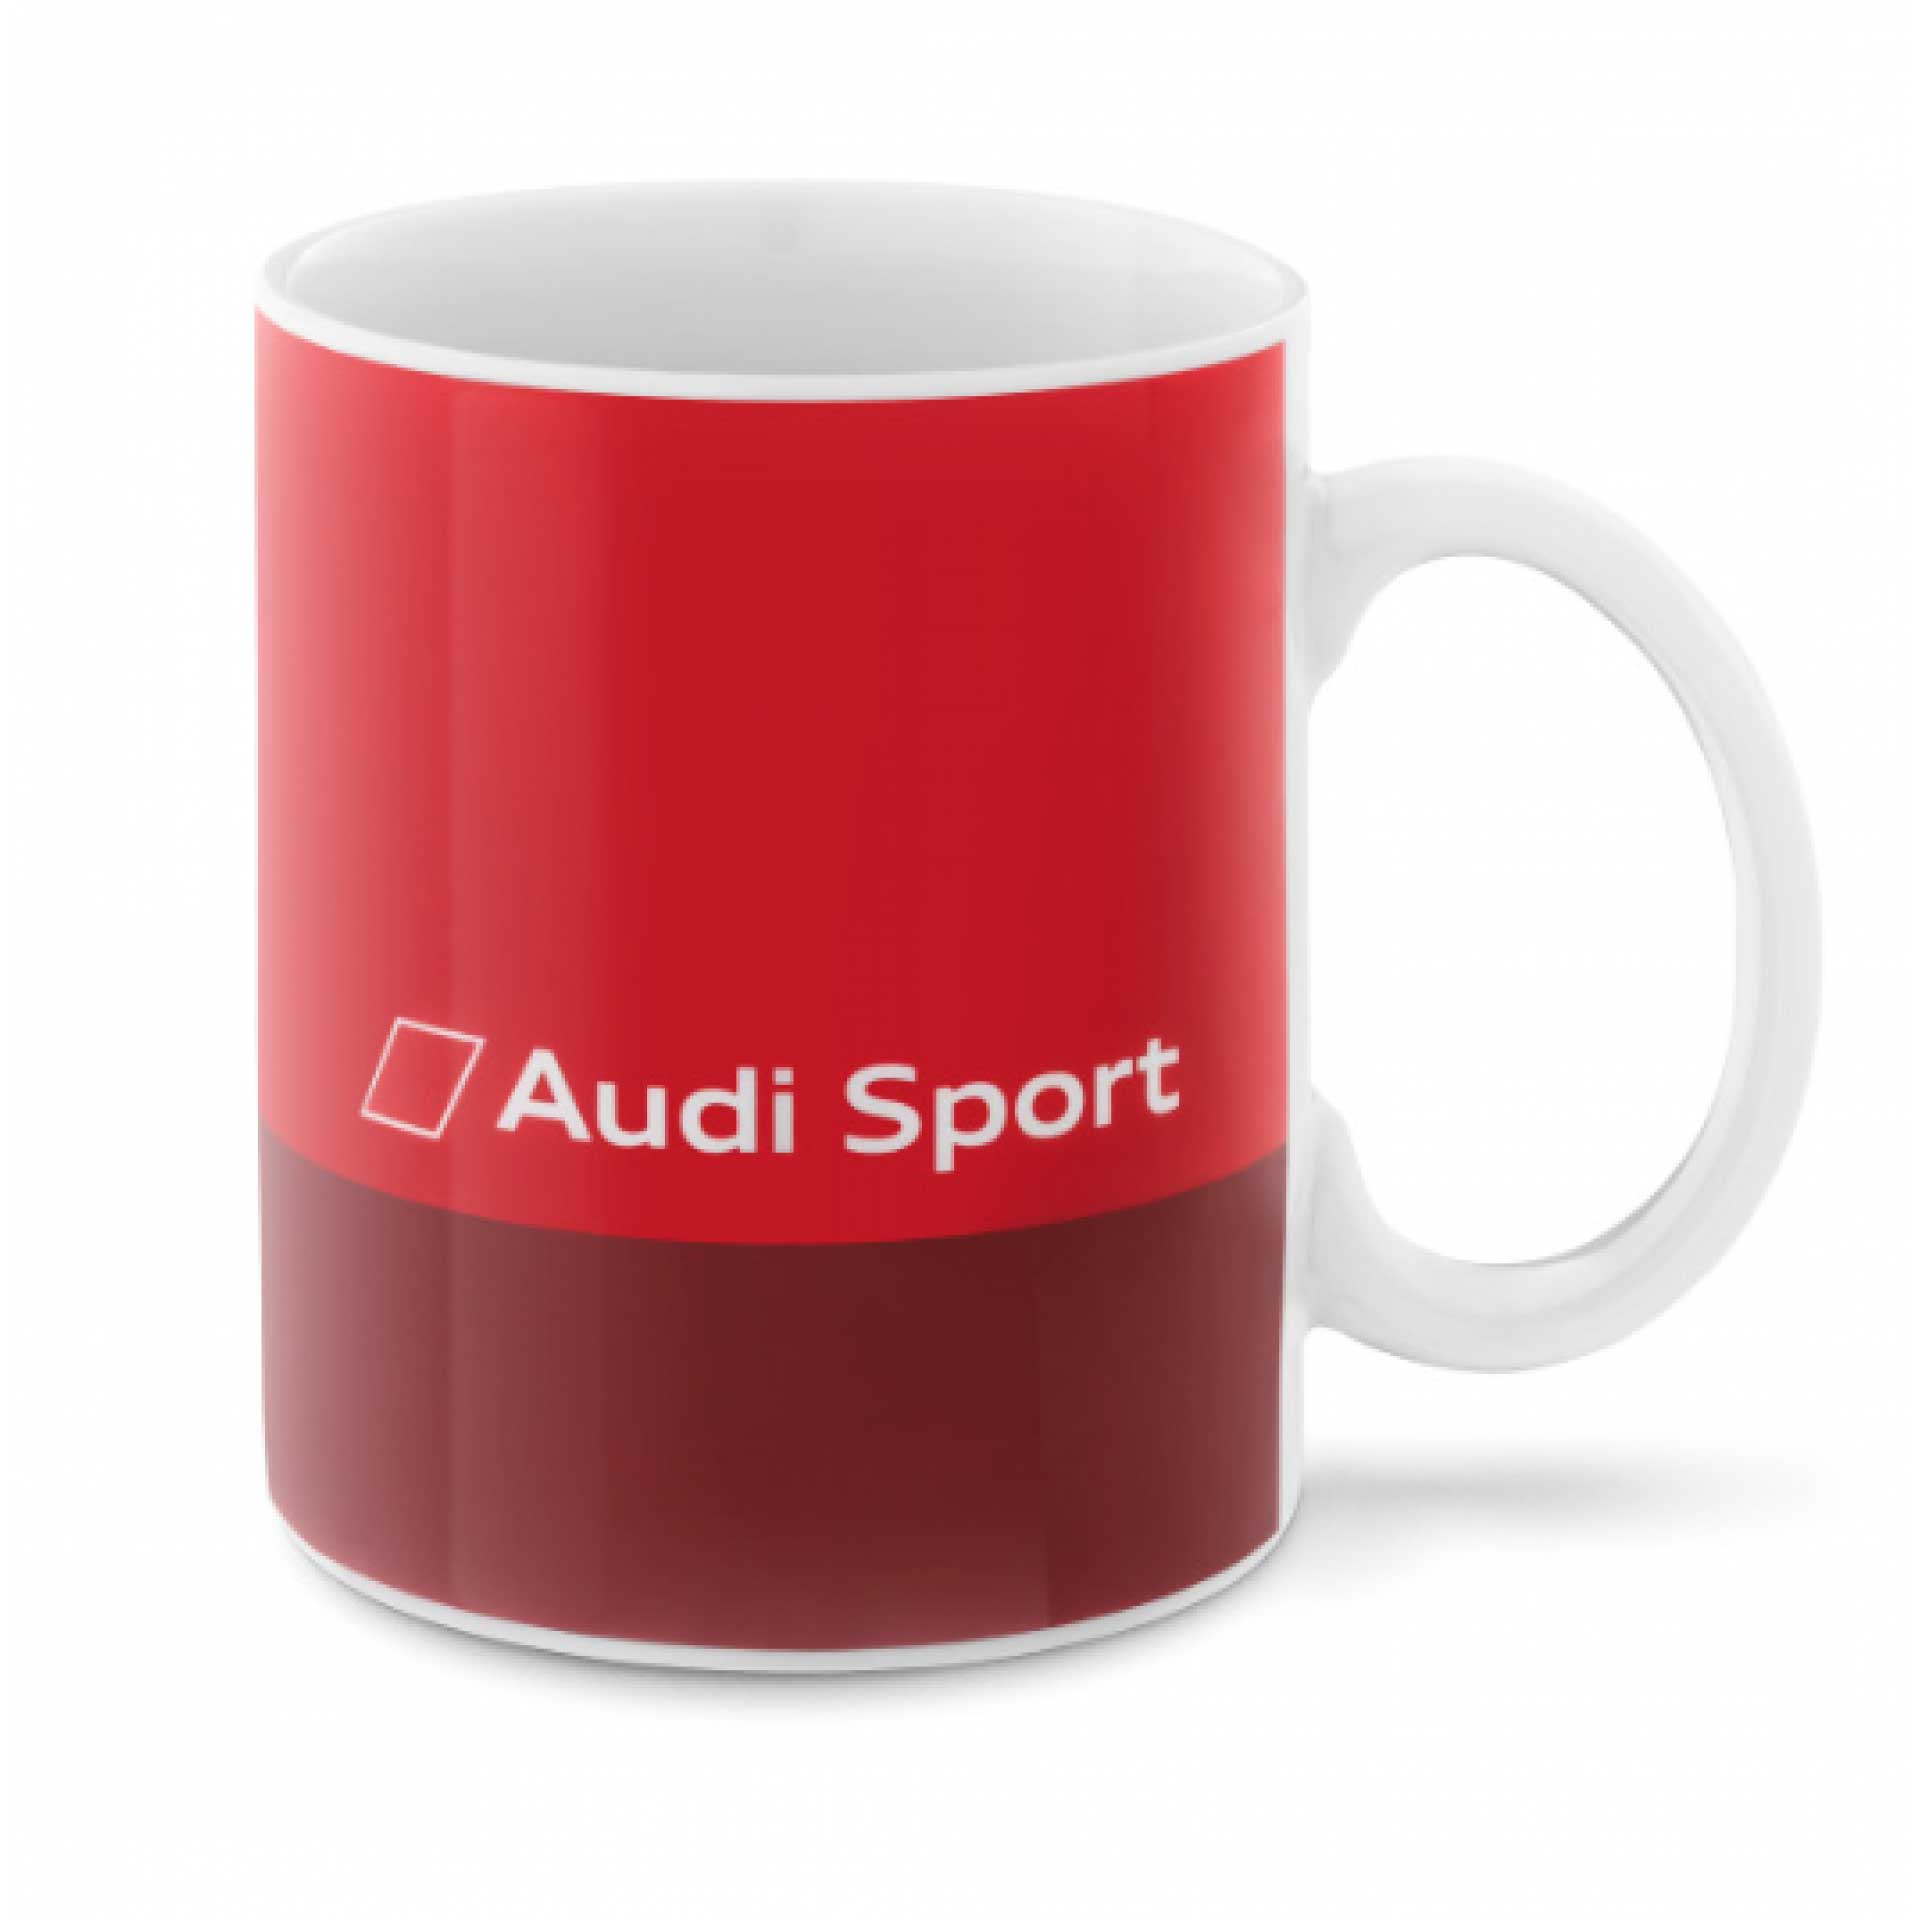 Audi Sport Becher Kaffeebecher rot 3291800500